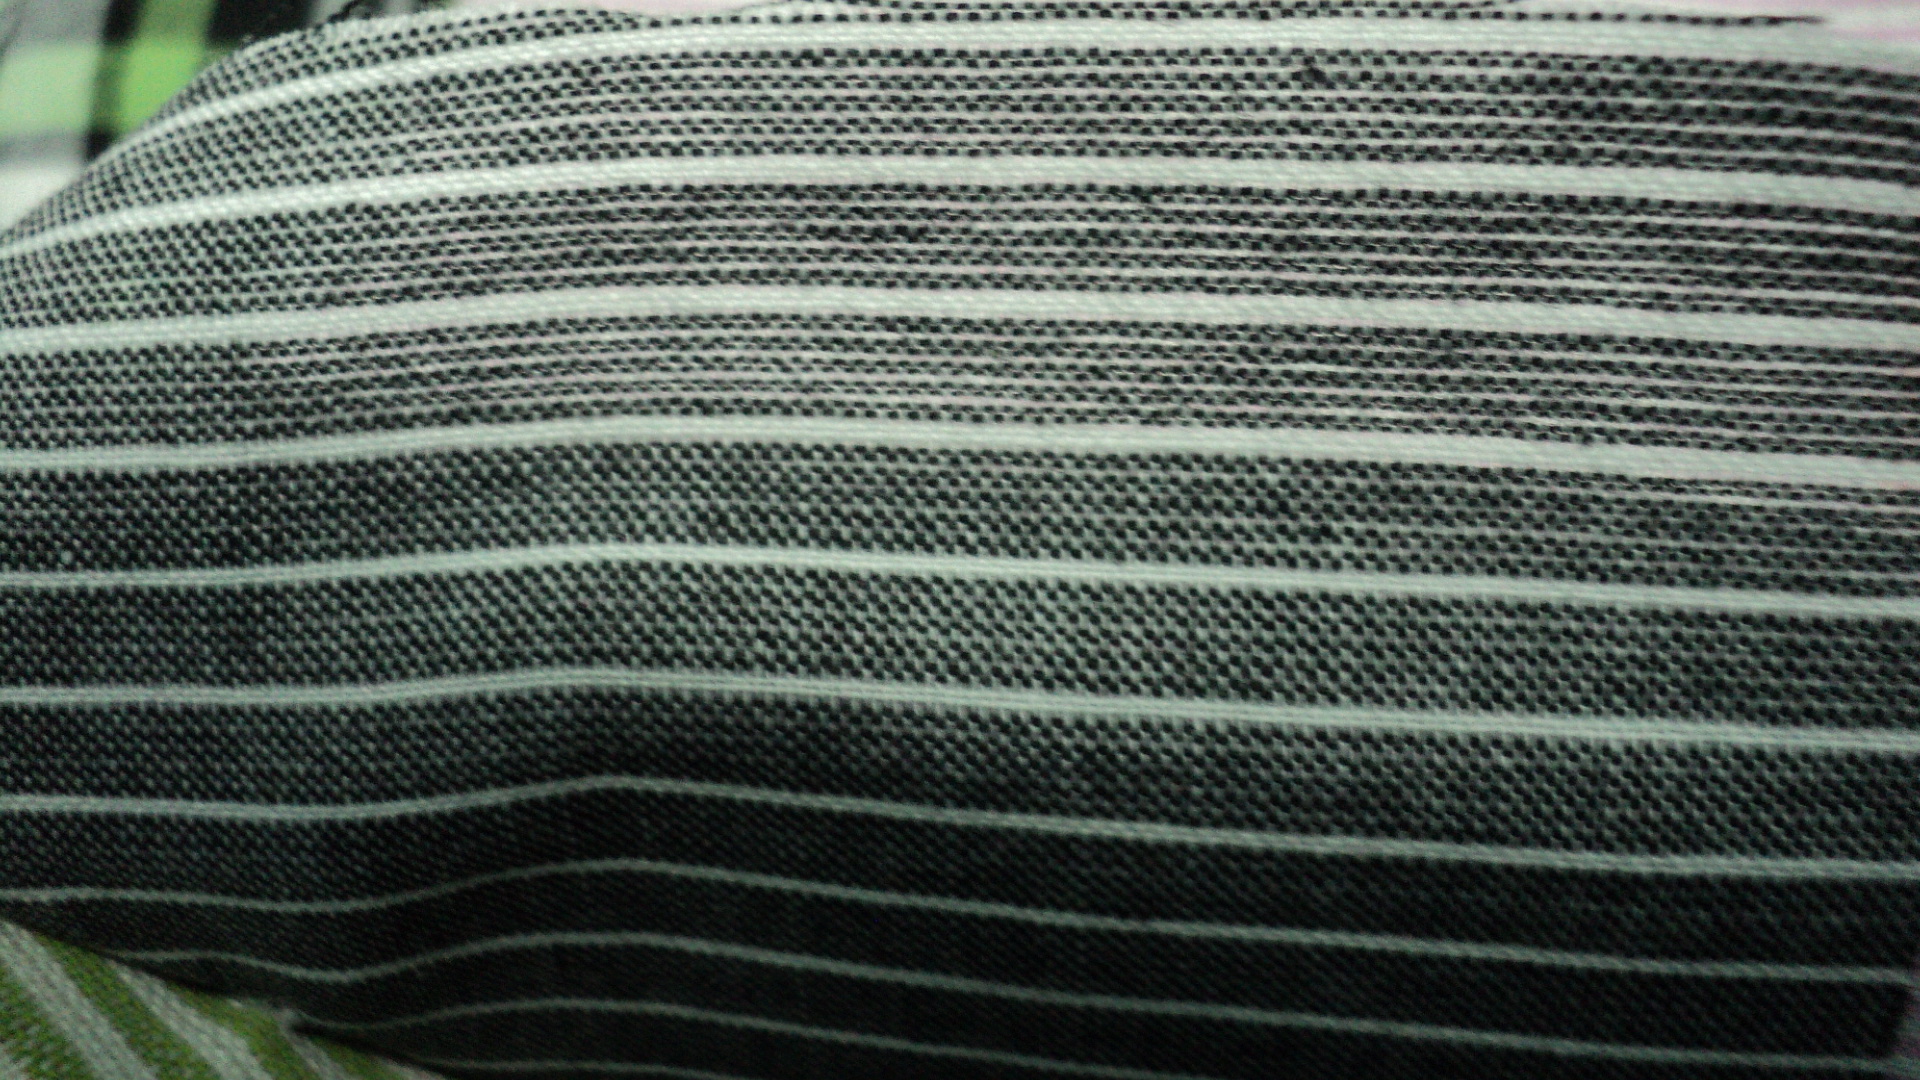 Stripe yarn dyed